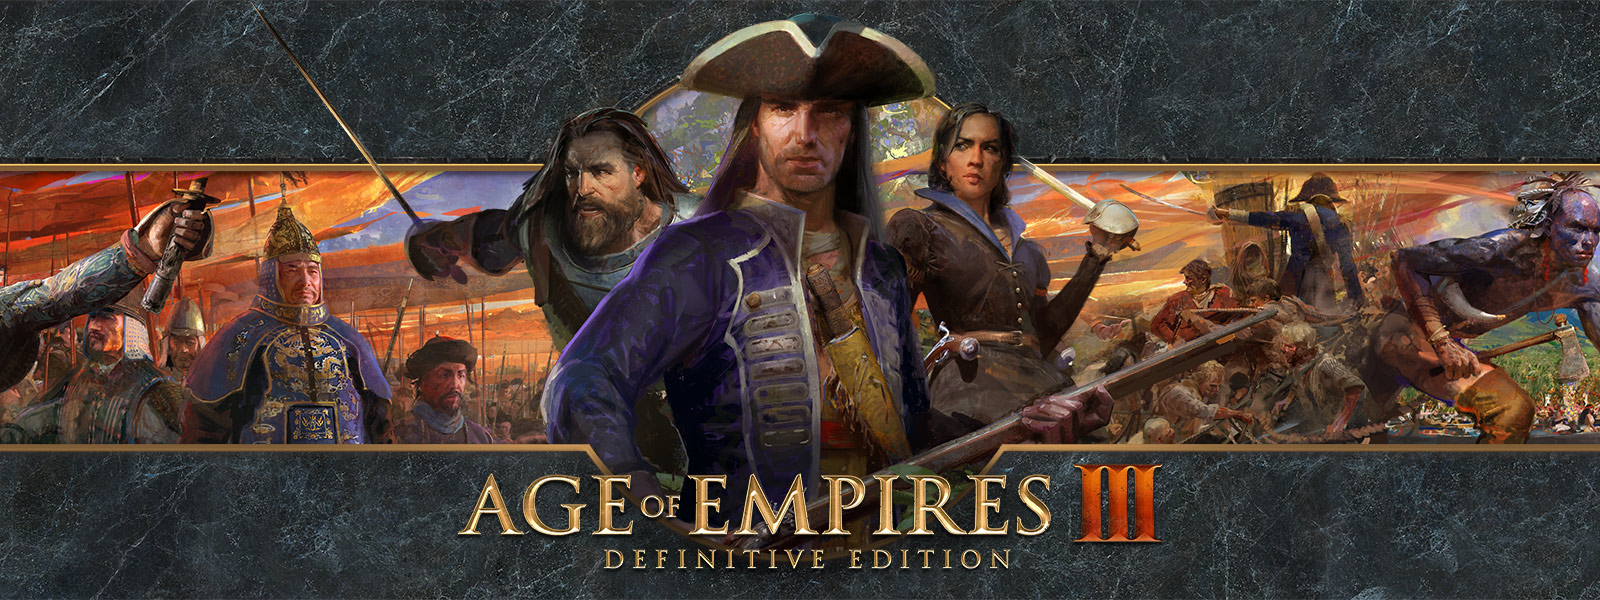 Age of Empires III: Definitive Edition-logo mot en bakgrunn med krigsledere og deres hærer